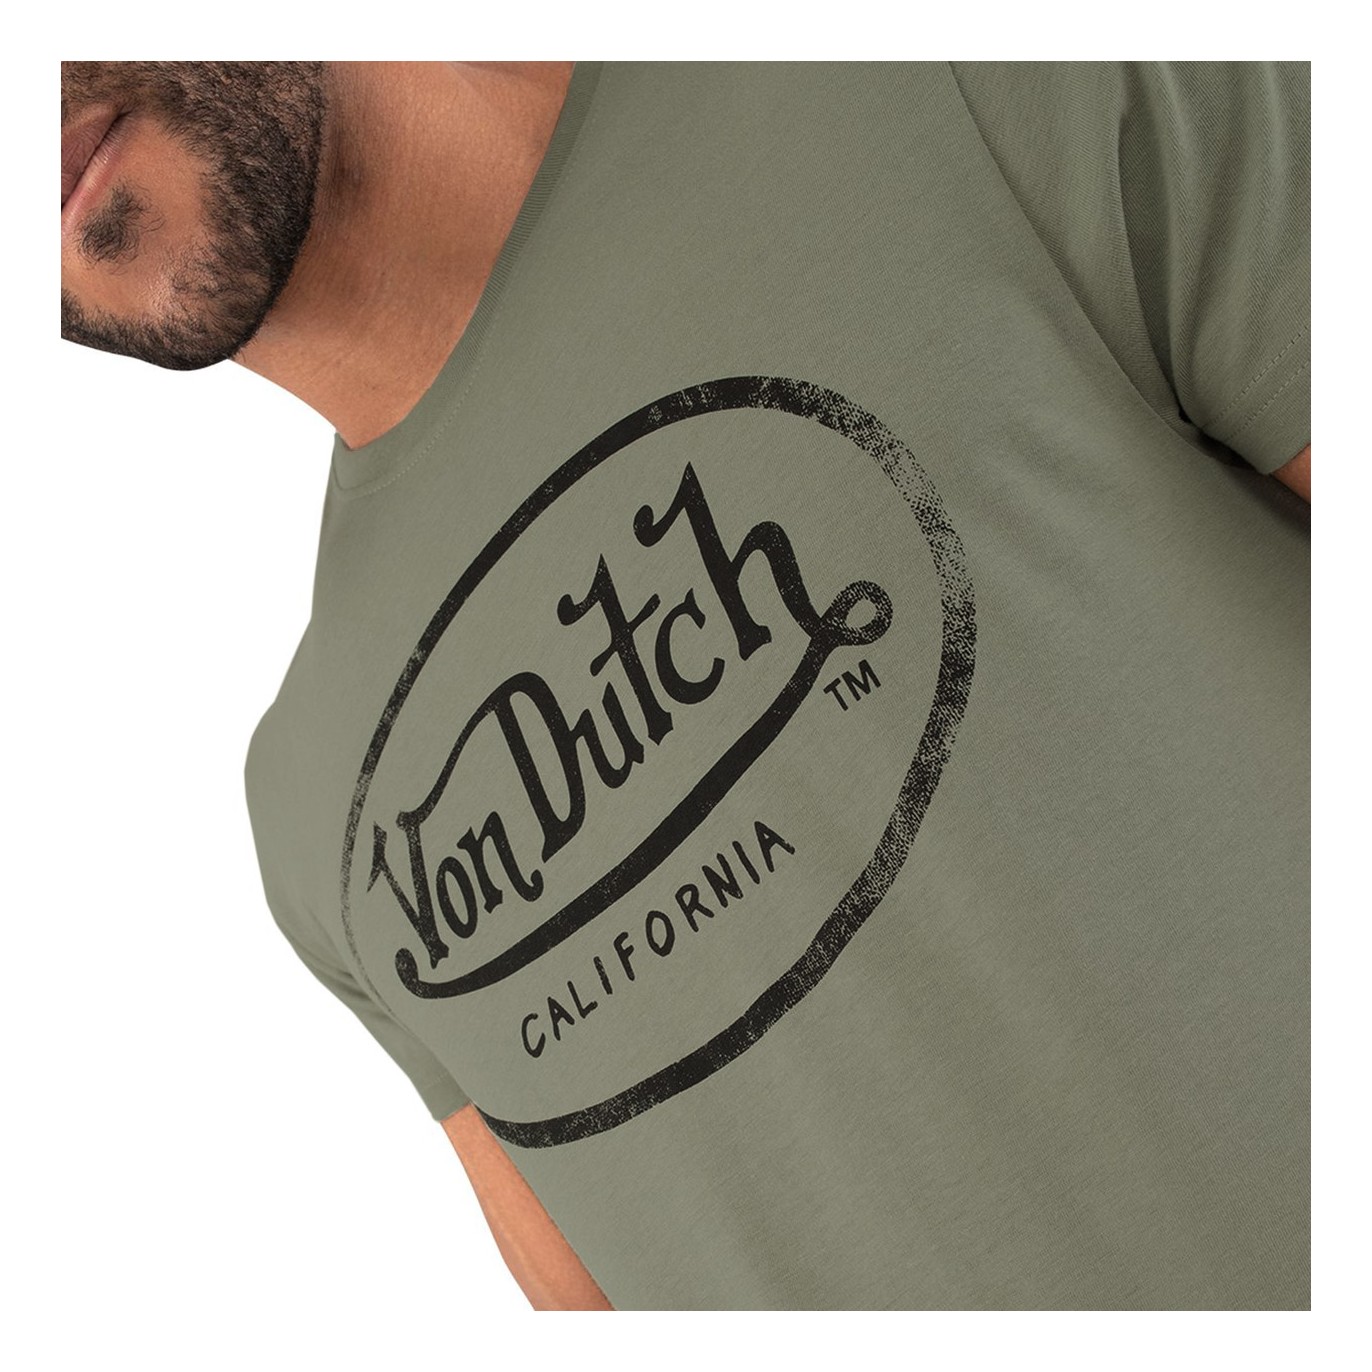 T-shirt kaki Von Dutch